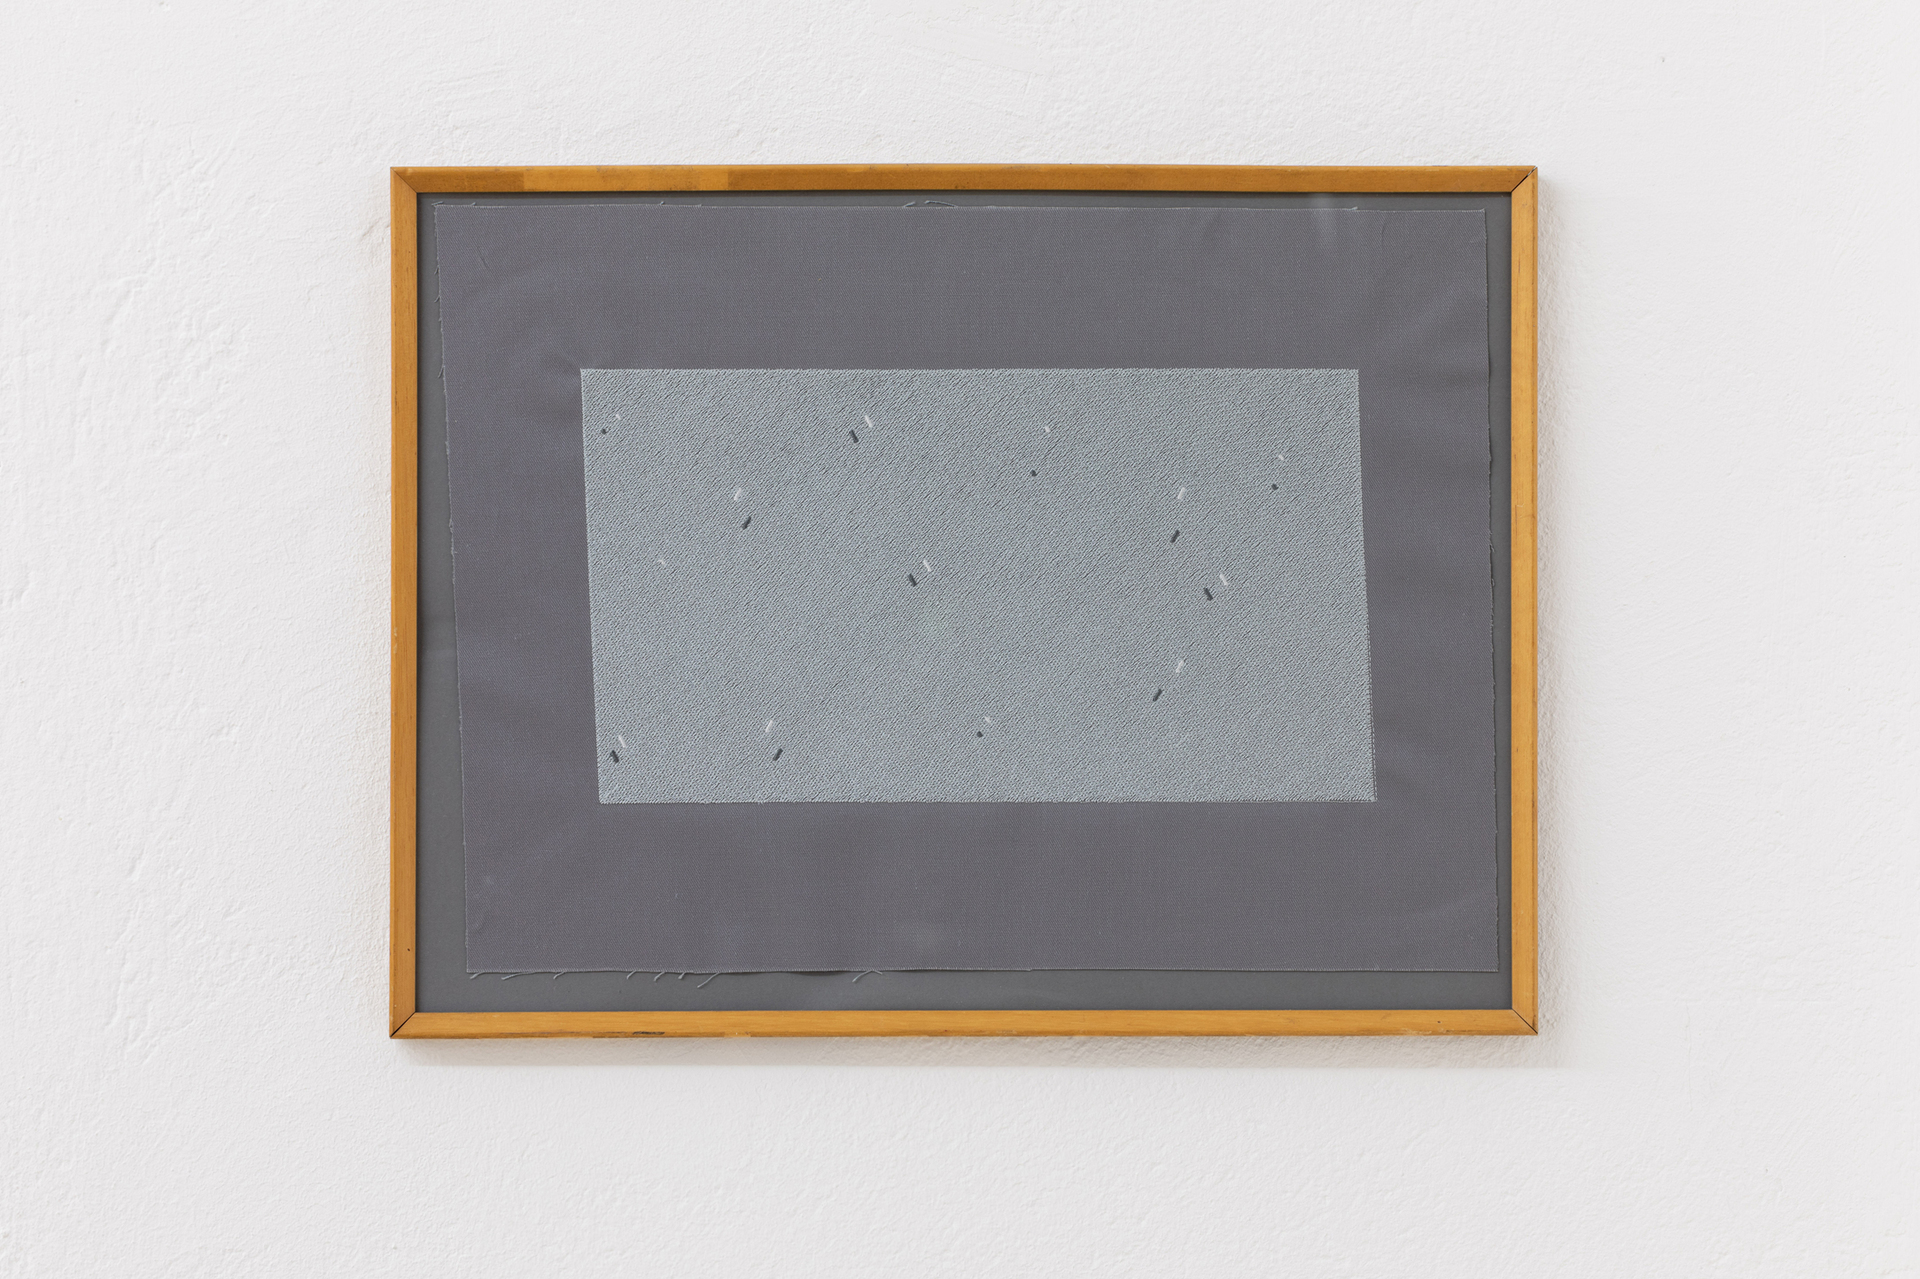 Ernst Markus Stein, beton, 2020, Embroidery on textile, ca. 37,5 cm x 27,5 cm